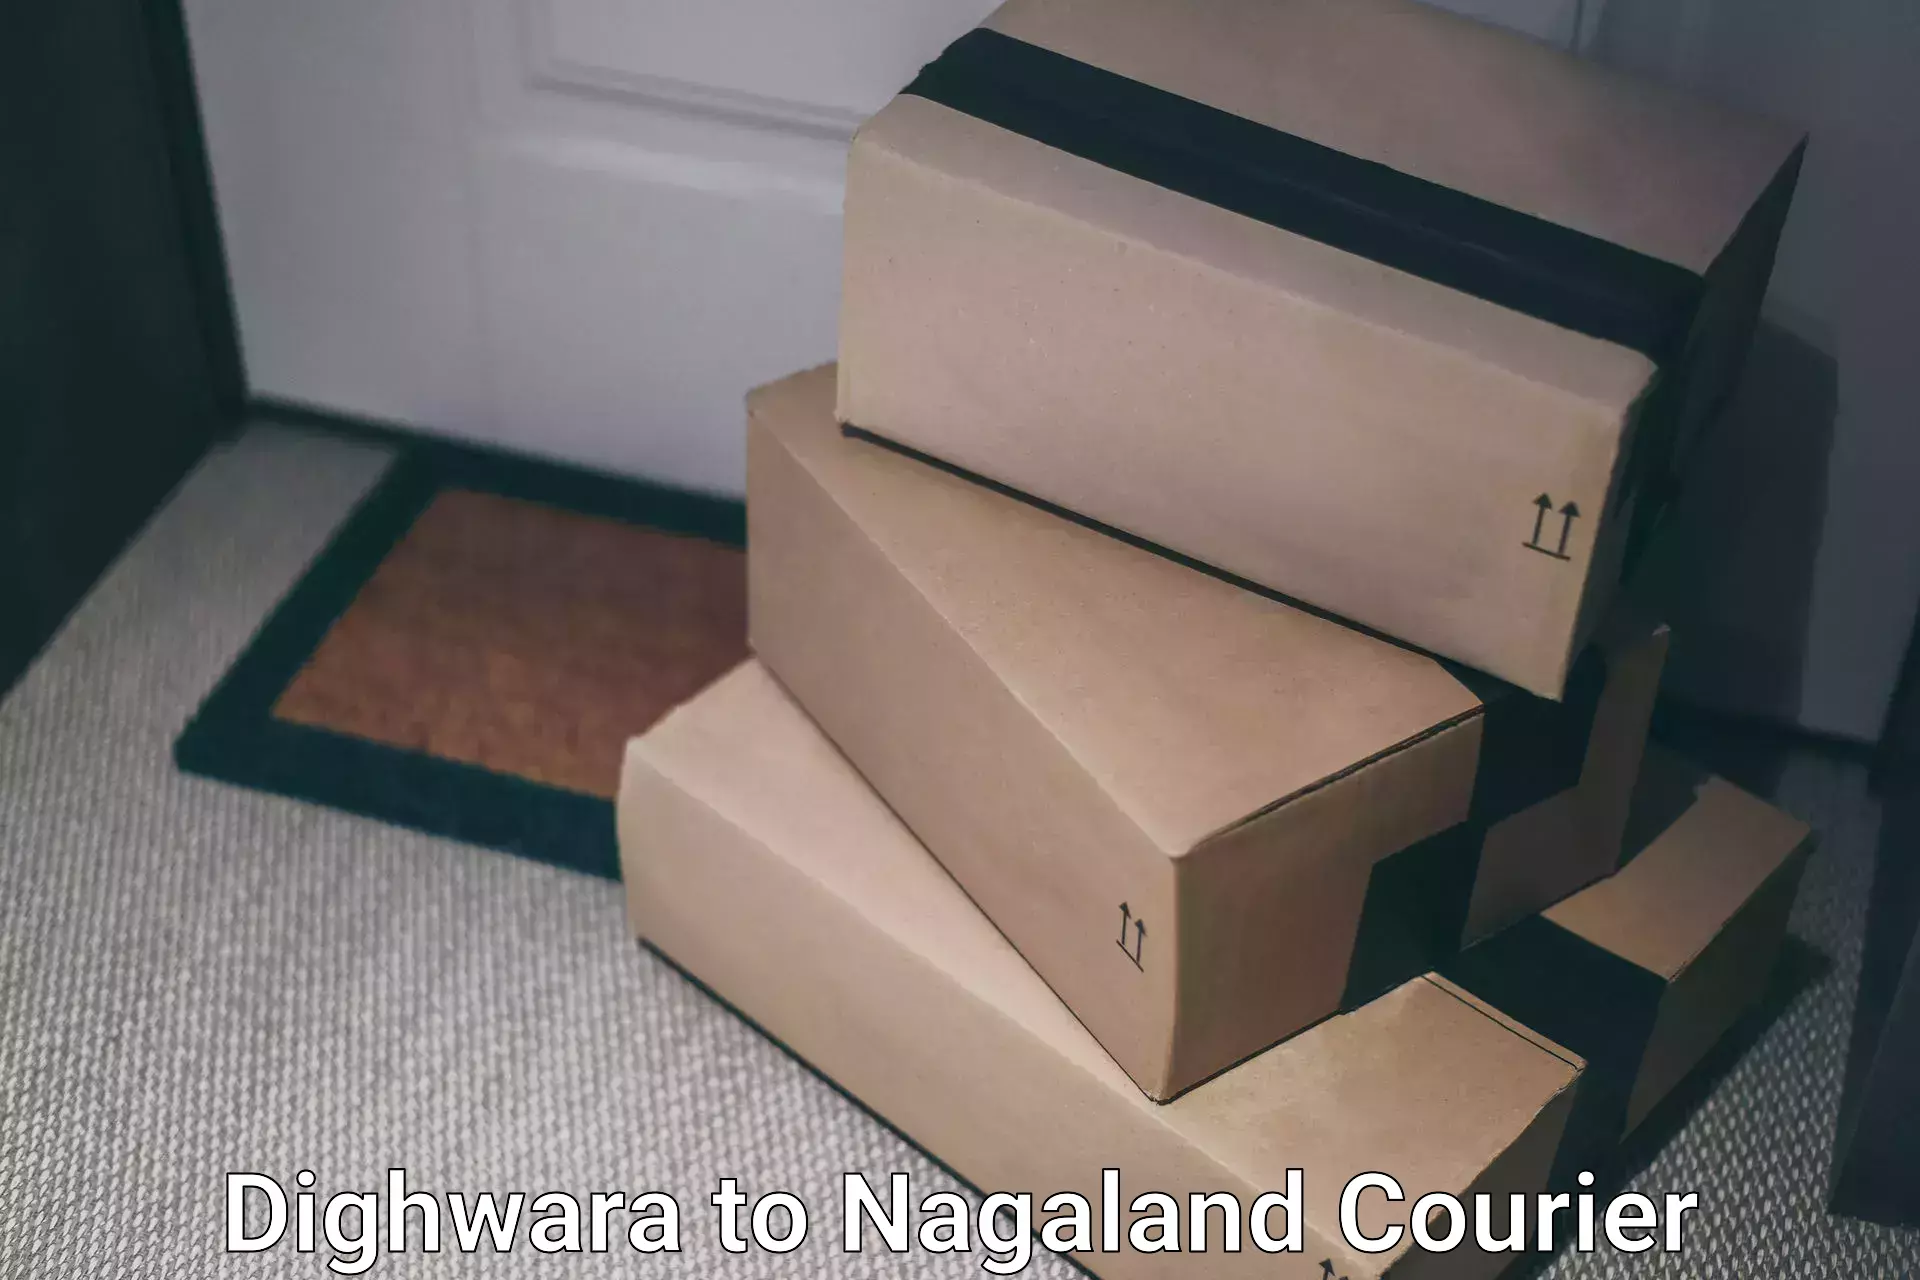 Express courier facilities Dighwara to Nagaland